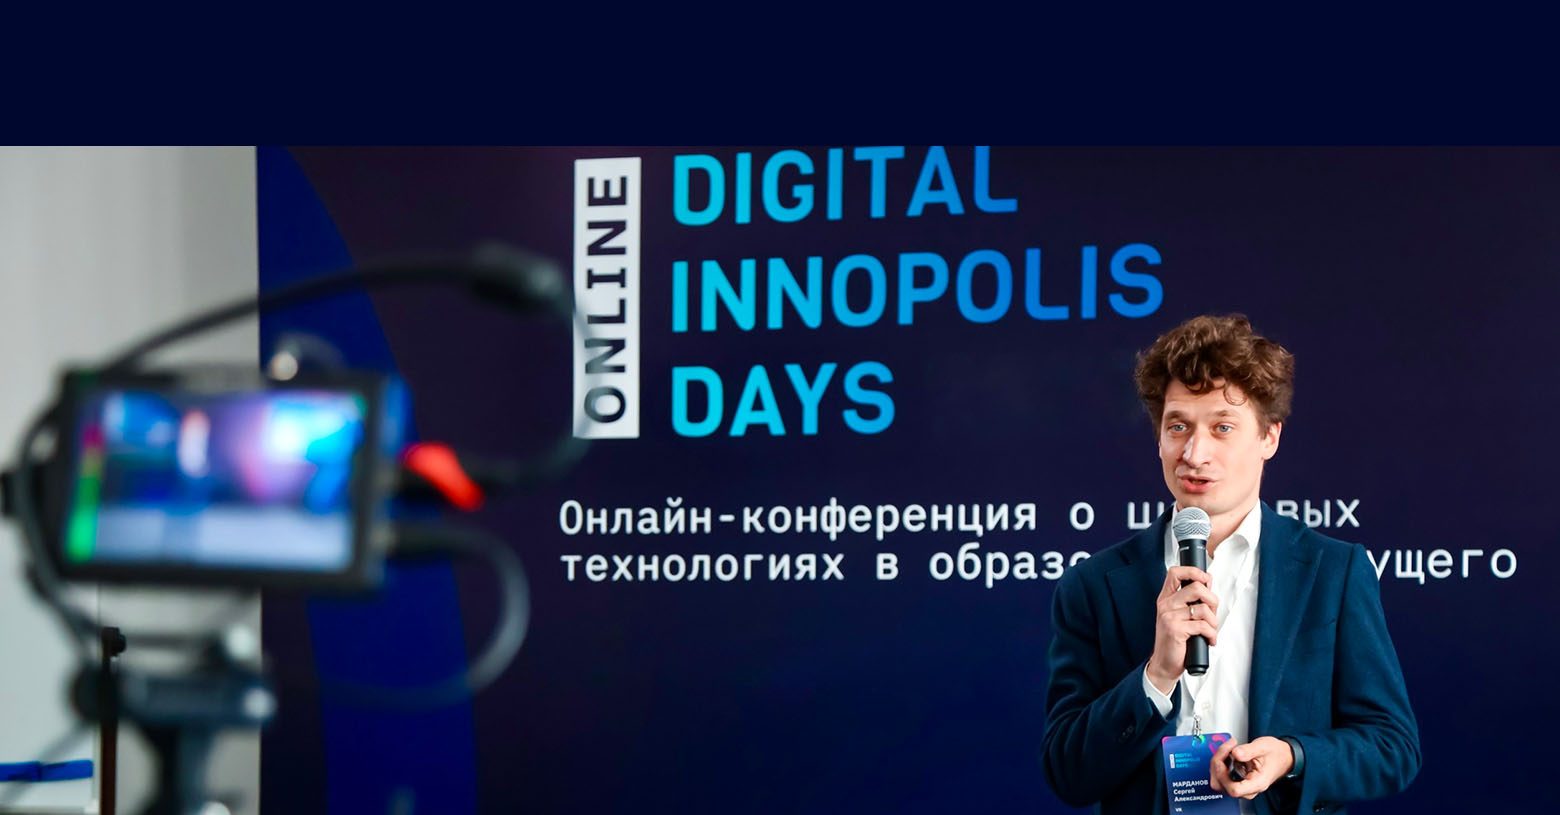 Подготовку специалистов будущего и онлайн-обучение обсудят в Университете Иннополис